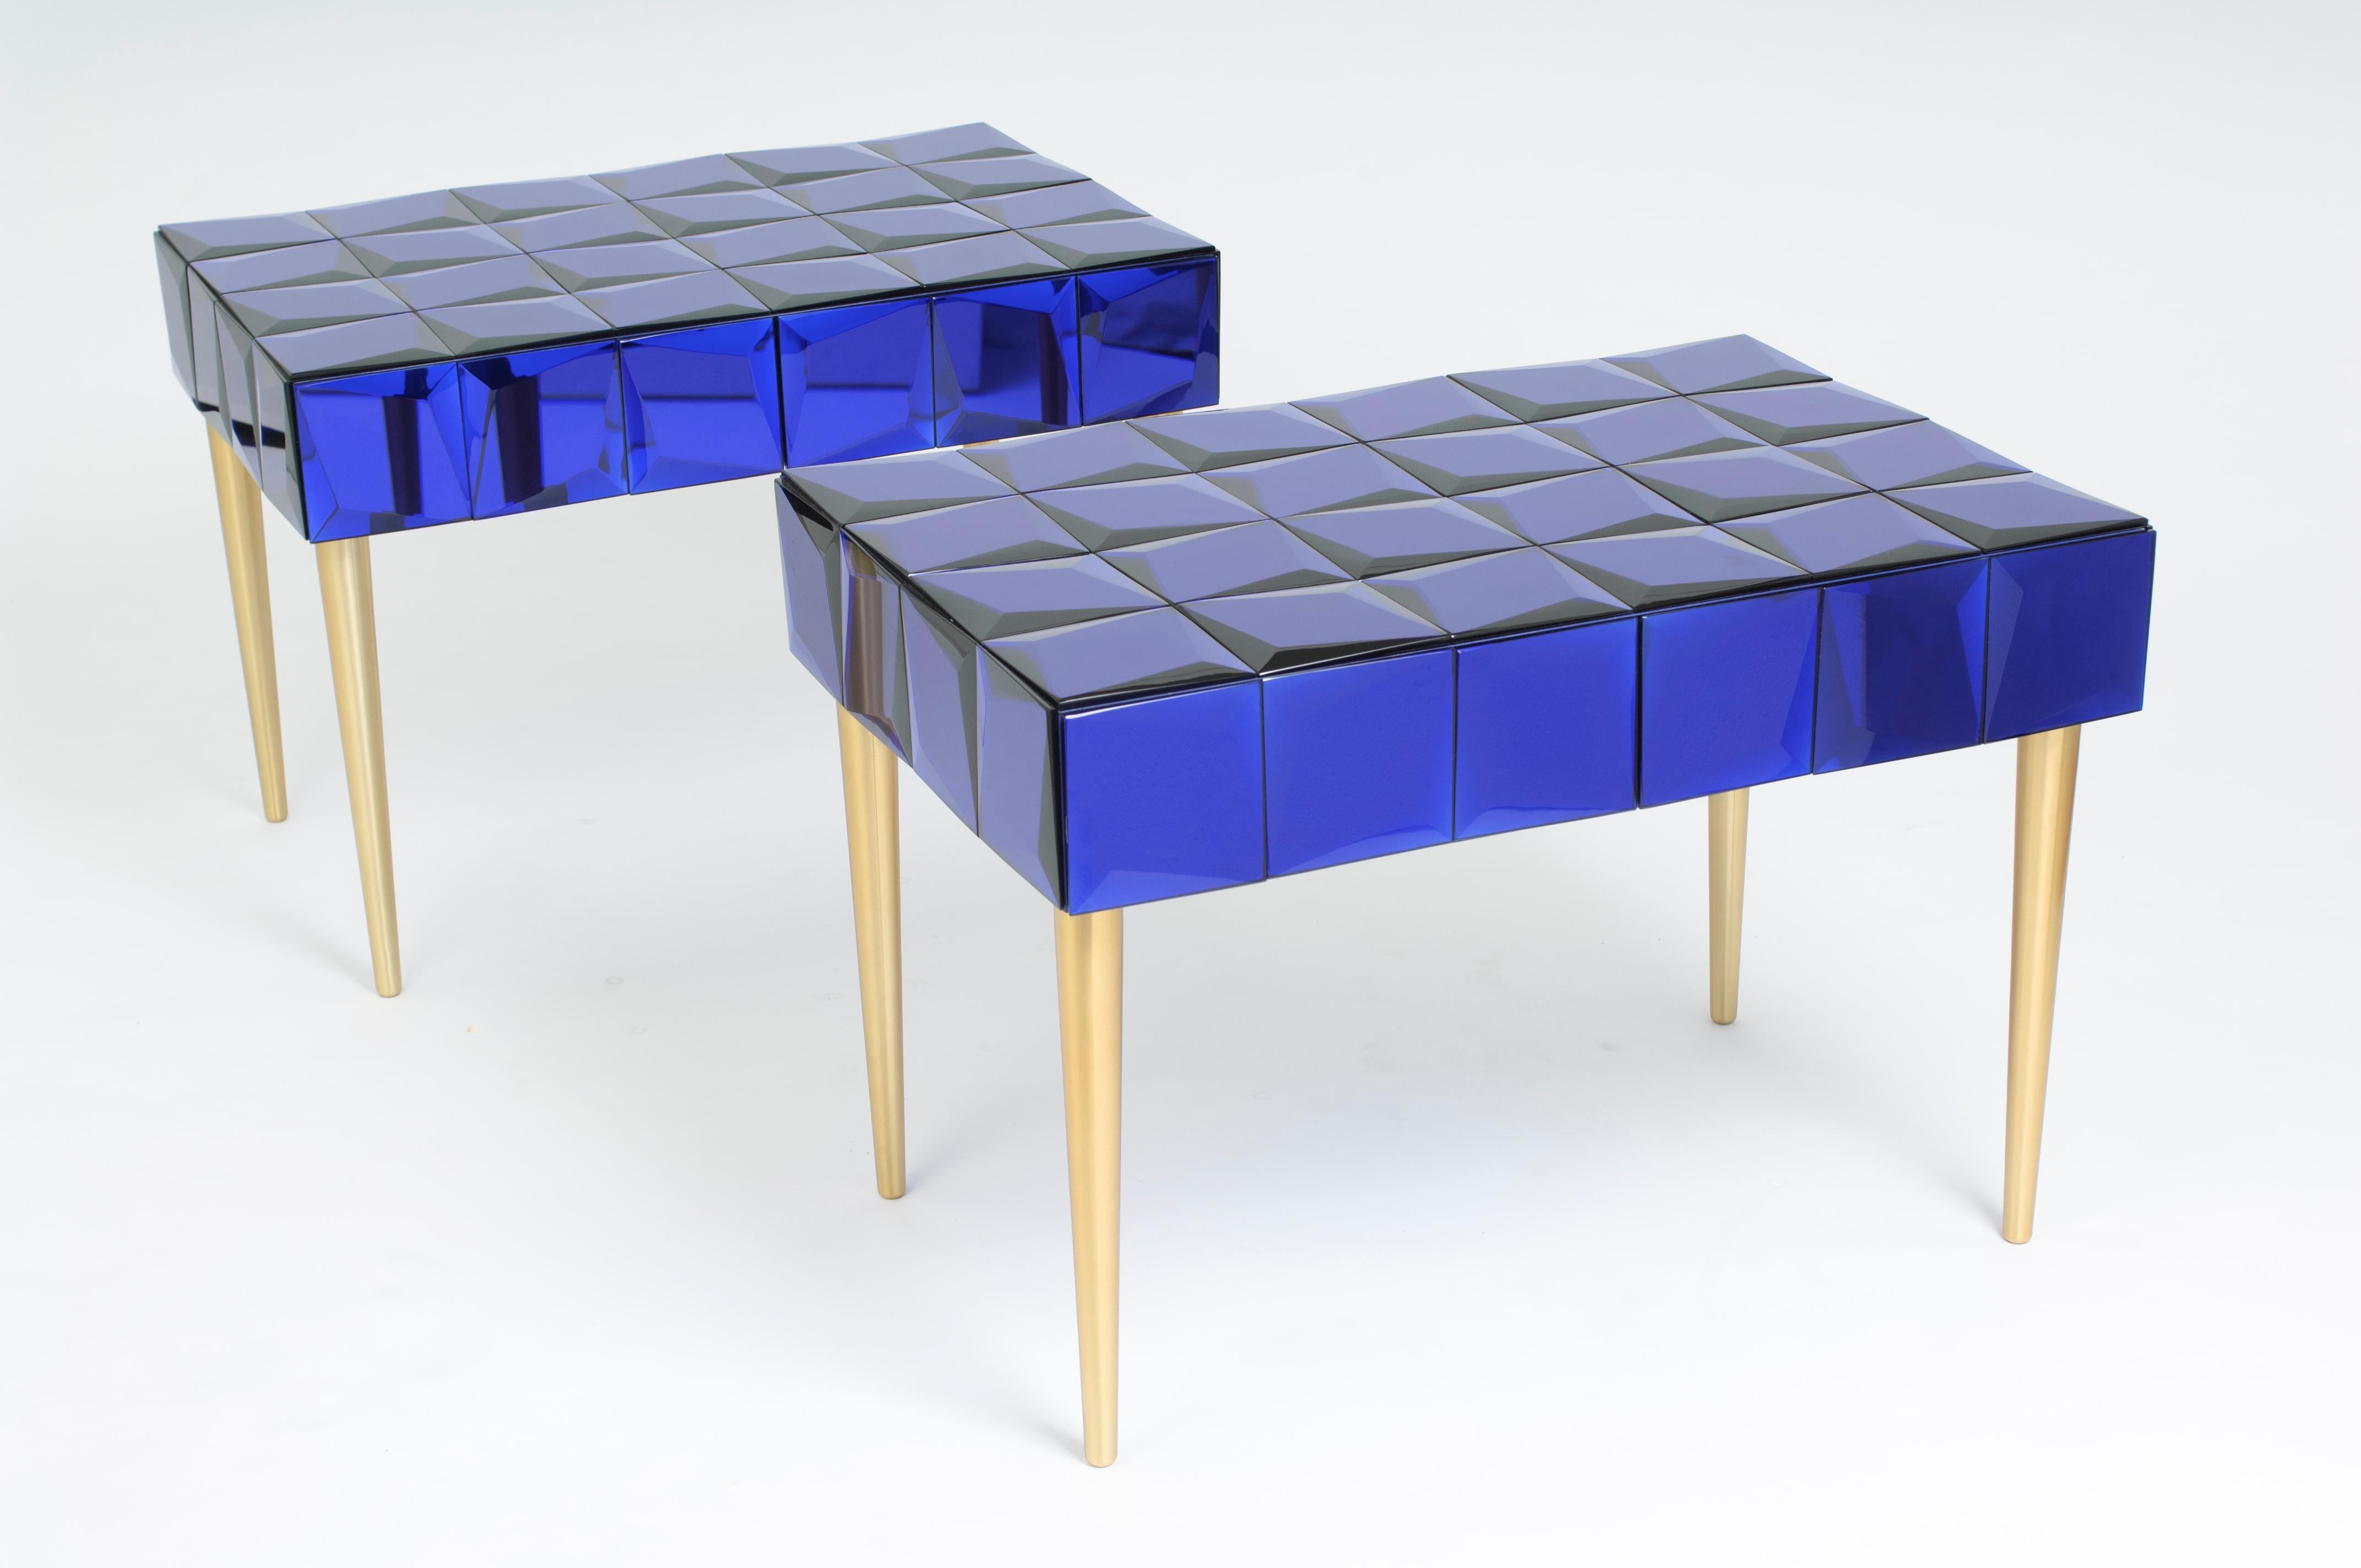 Paire de tables de chevet 'BLUE STARS' avec décoration centrale 

Le corps des tables de chevet est en bois de bouleau et est spécialement conçu pour être recouvert à la main de carreaux de verre bleus copiés. Les tuiles ont été créées à la main par